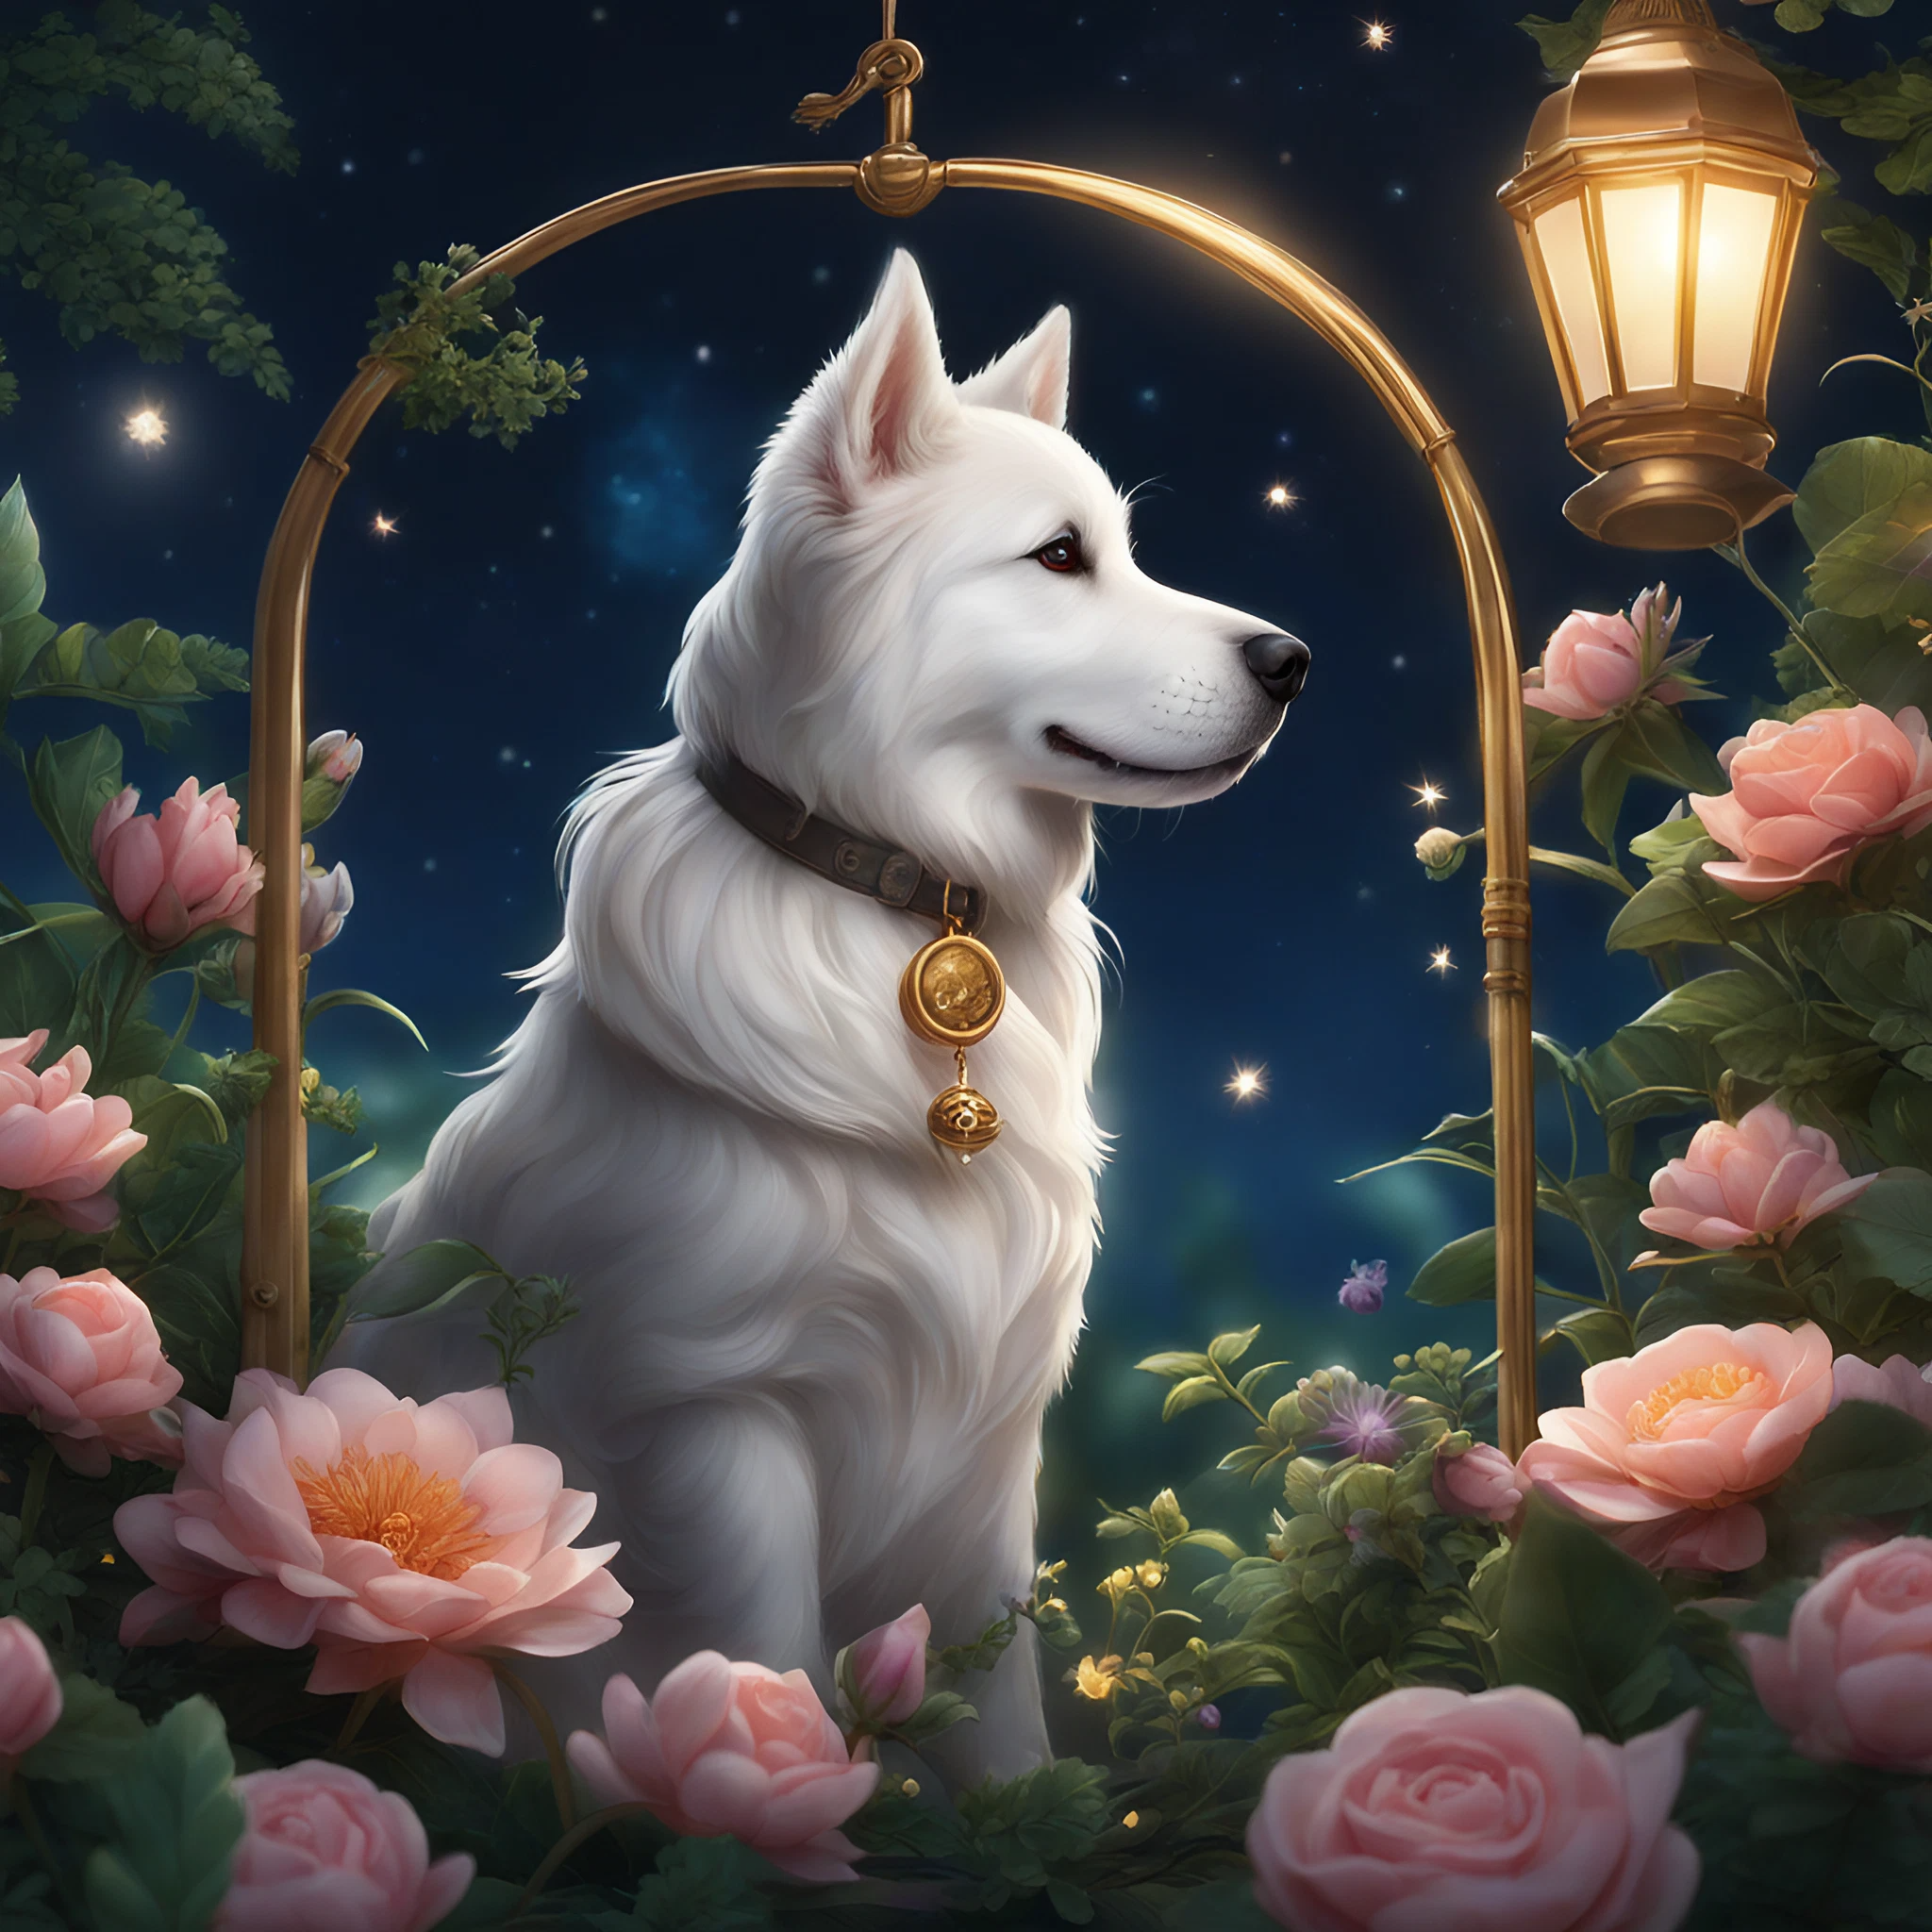 美しい夜空とかっこいい毛並みと白い犬と綺麗な花園と幻想的なランプのリアルなフリーイラスト画像素材